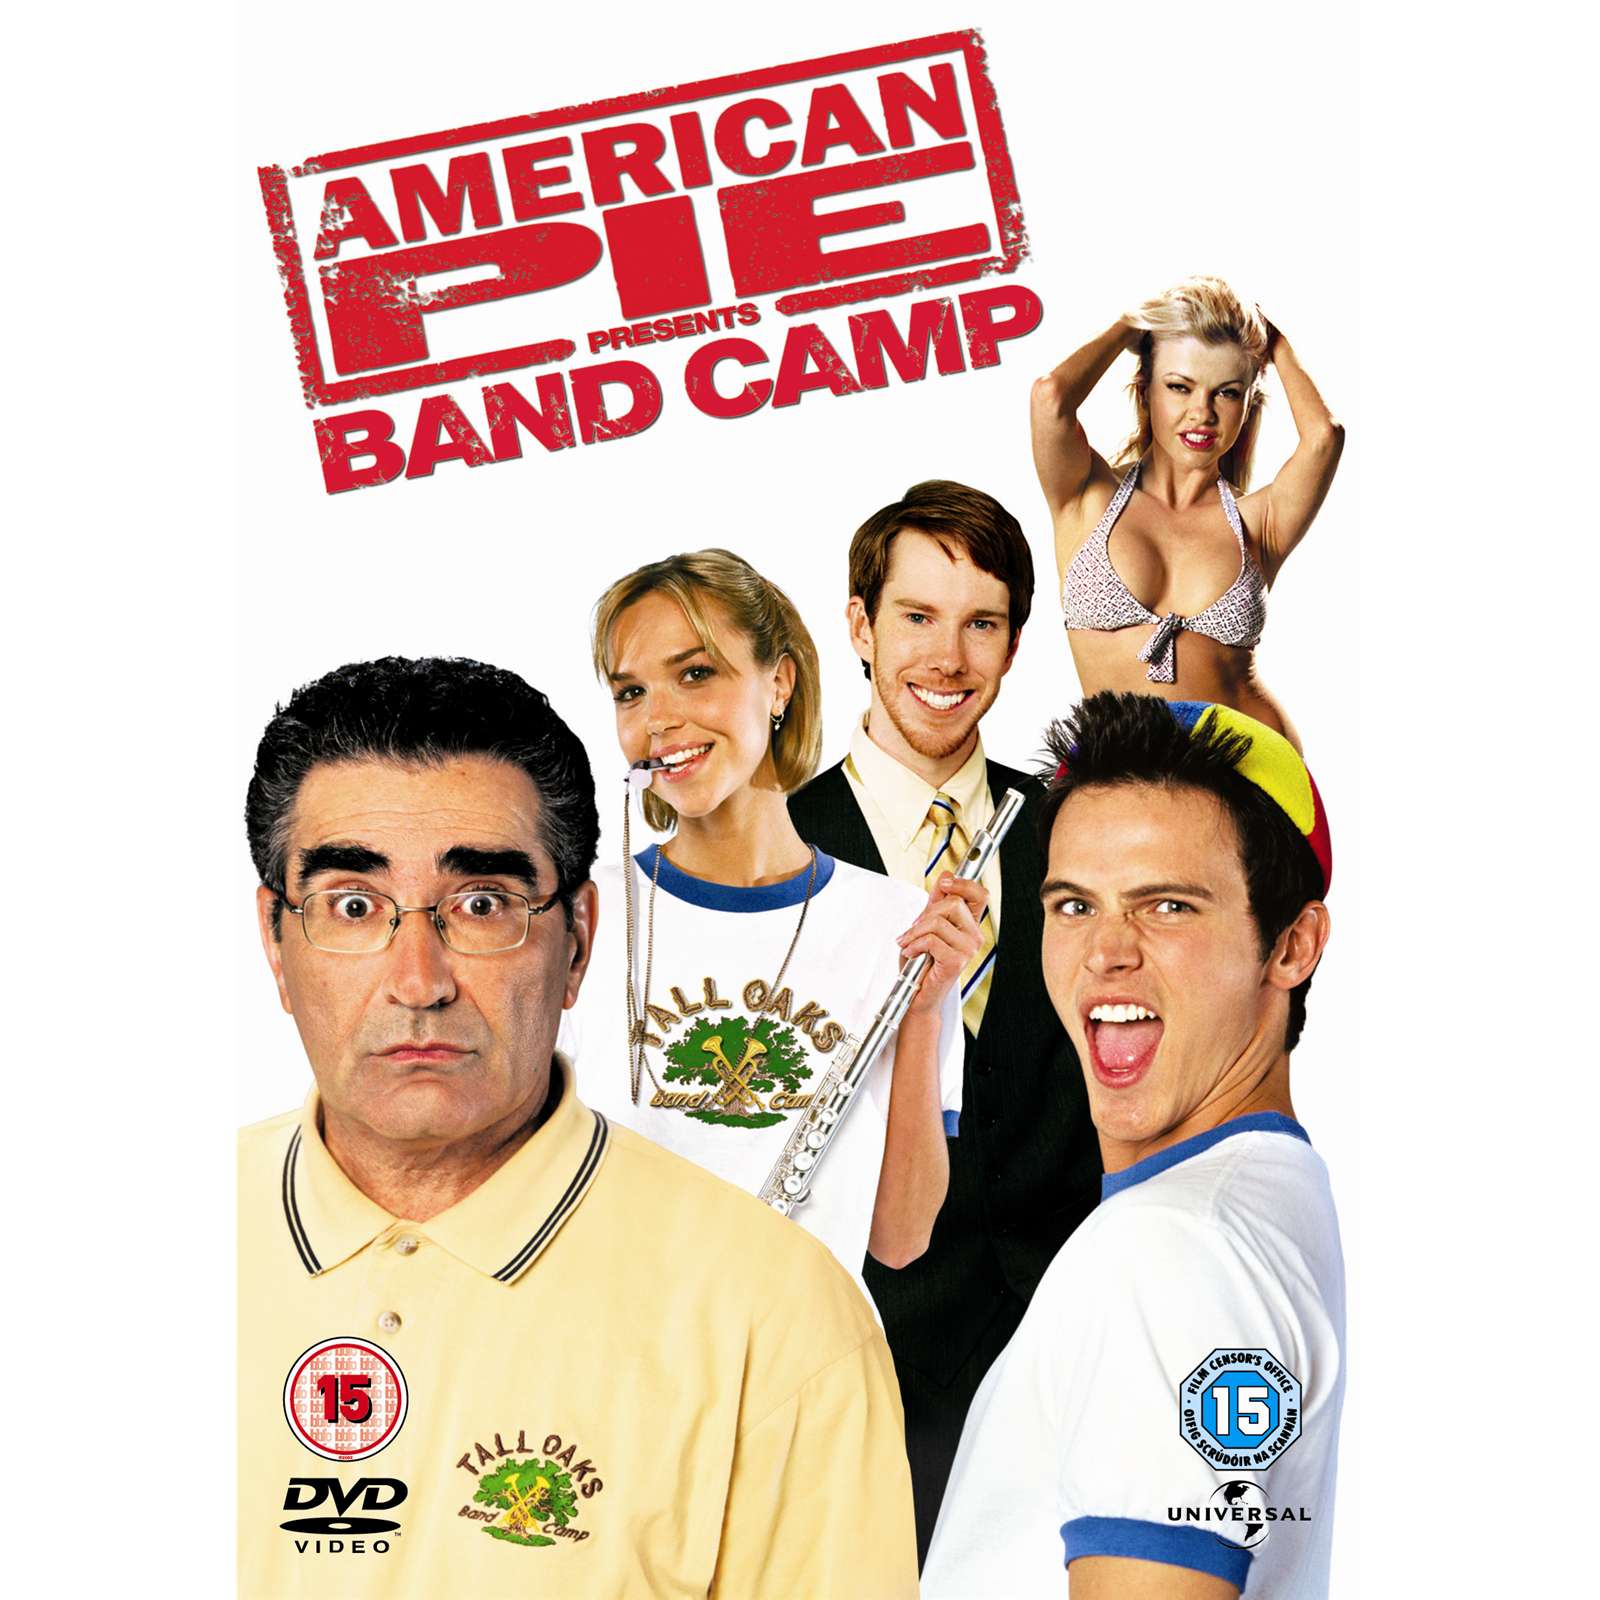 My Movie Review imdb copyright: American Pie 1 (1999)